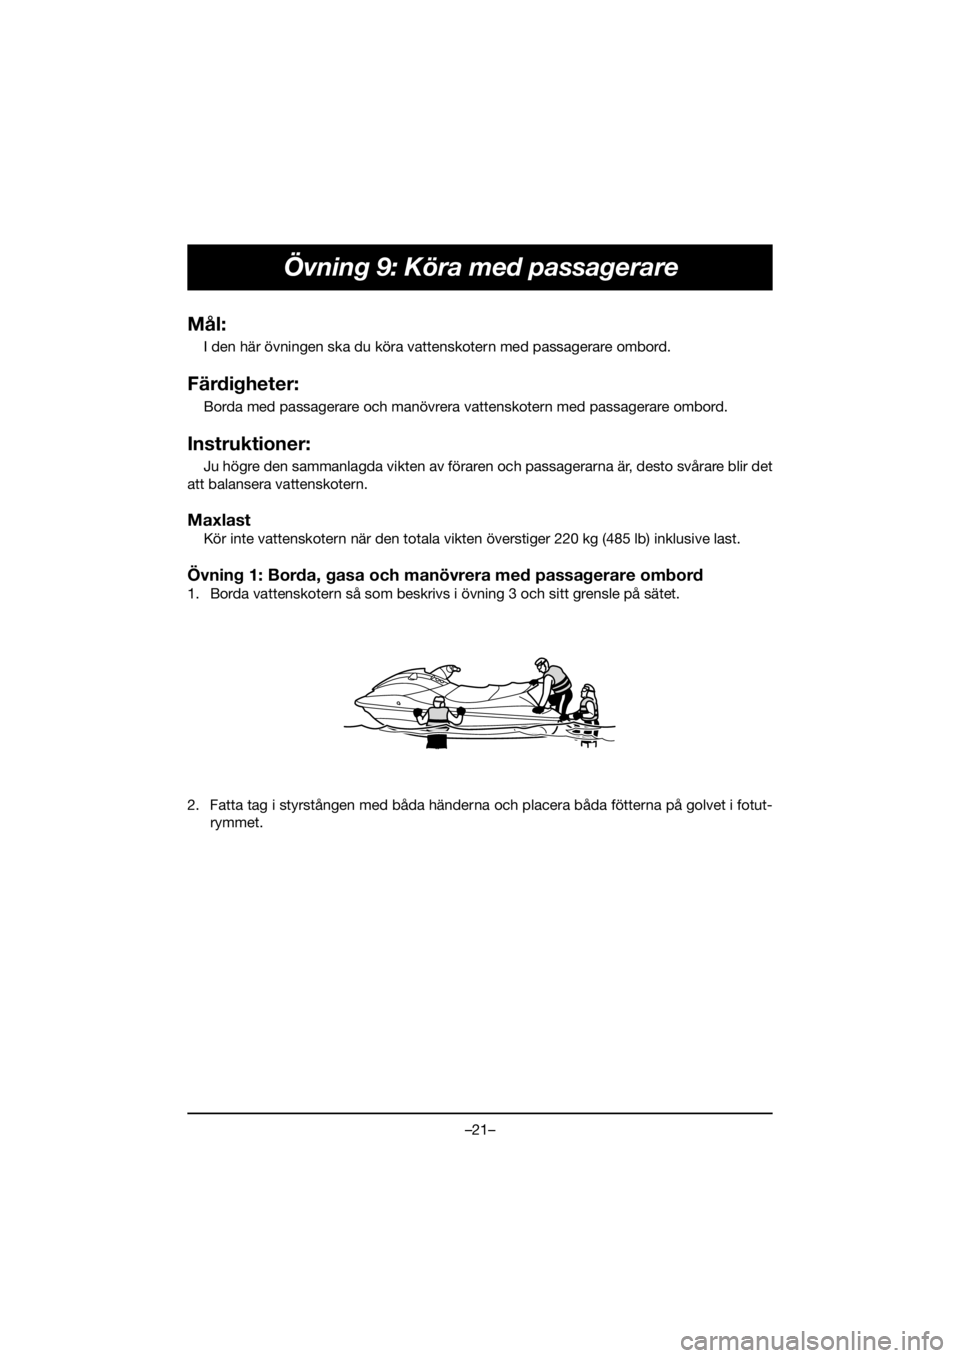 YAMAHA EX DELUXE 2019  Manuale de Empleo (in Spanish) –21–
Övning 9: Köra med passagerare
Mål:
I den här övningen ska du köra vattenskotern med passagerare ombord.
Färdigheter:
Borda med passagerare och manövrera vattenskotern med passagerare